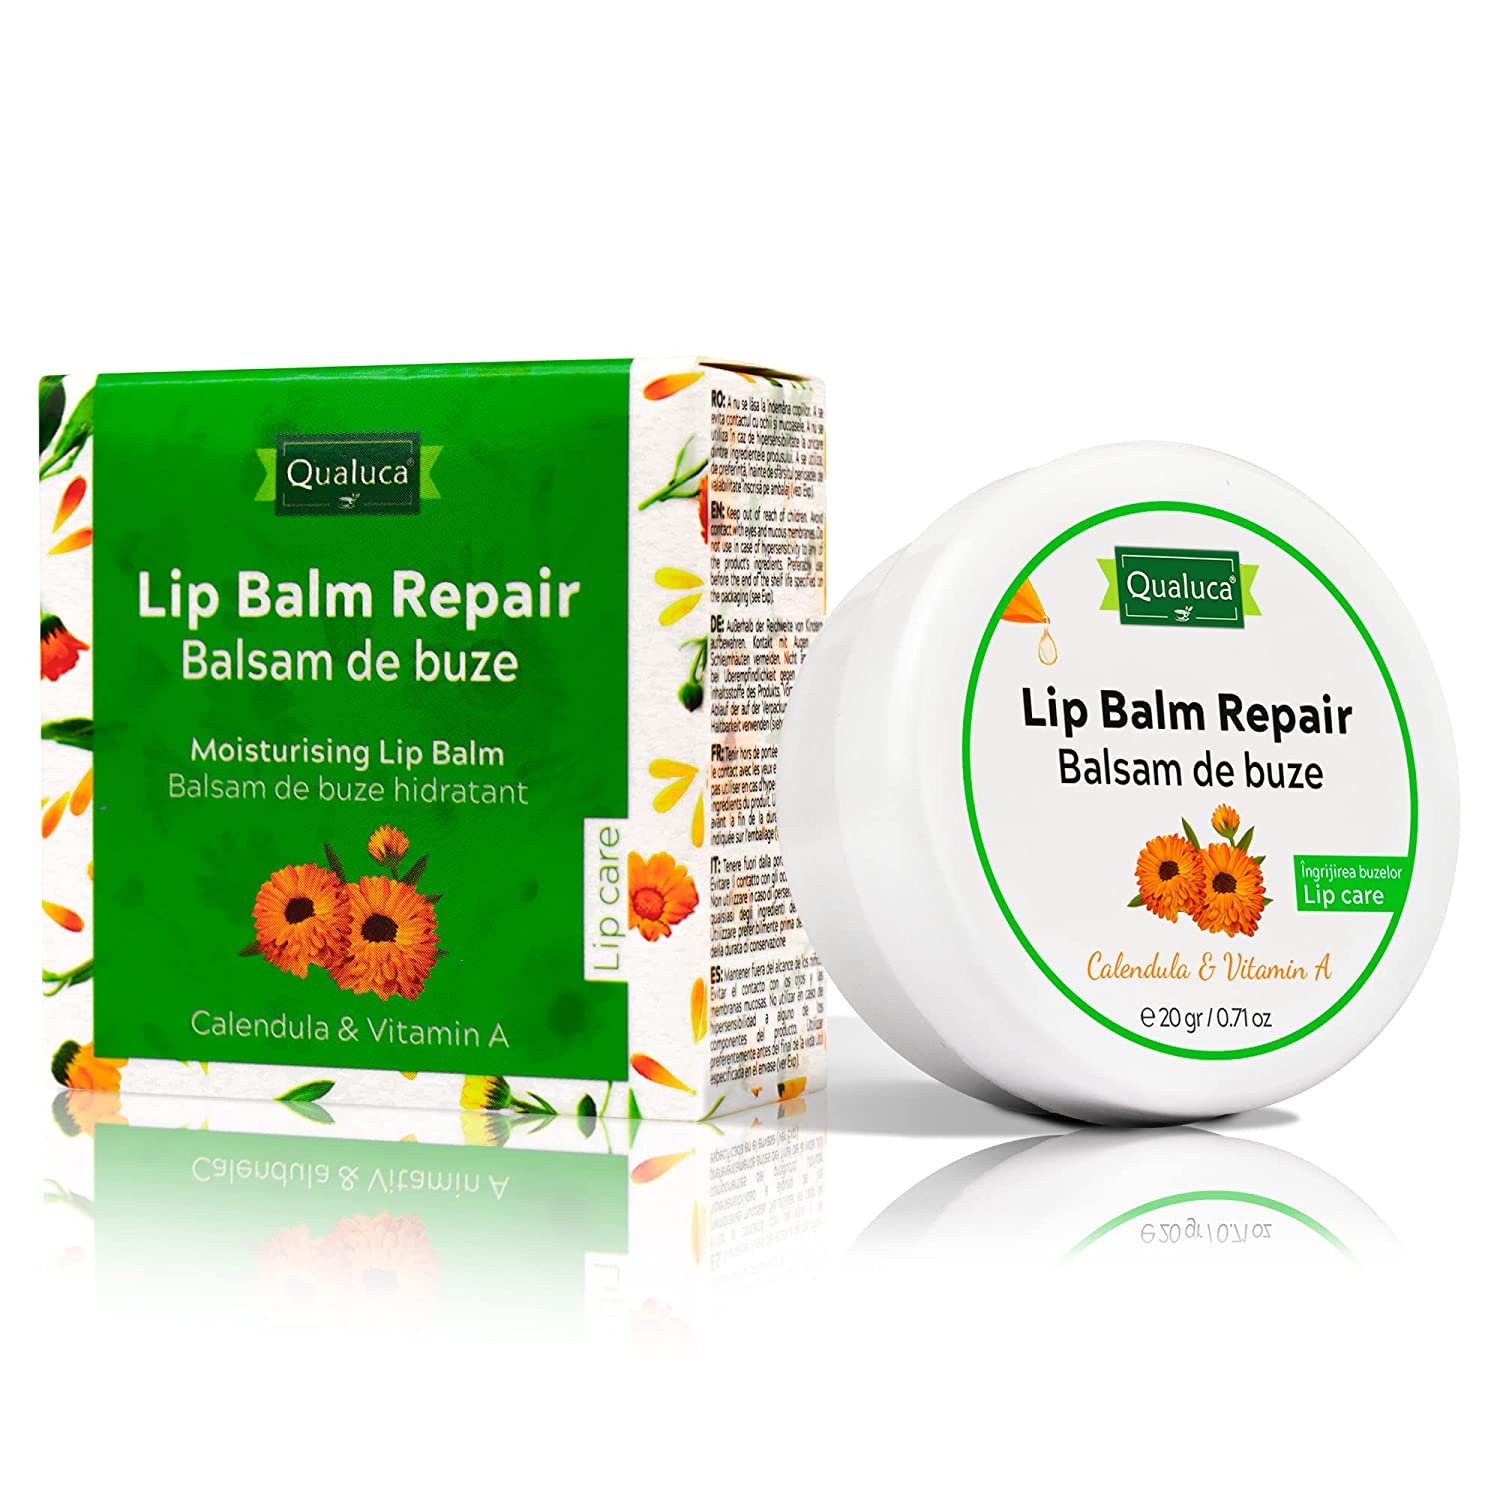 Qualuca Lip Balm Repair with Calendula & Vitamin A, Lip Balm for Dry Lips - 20 g